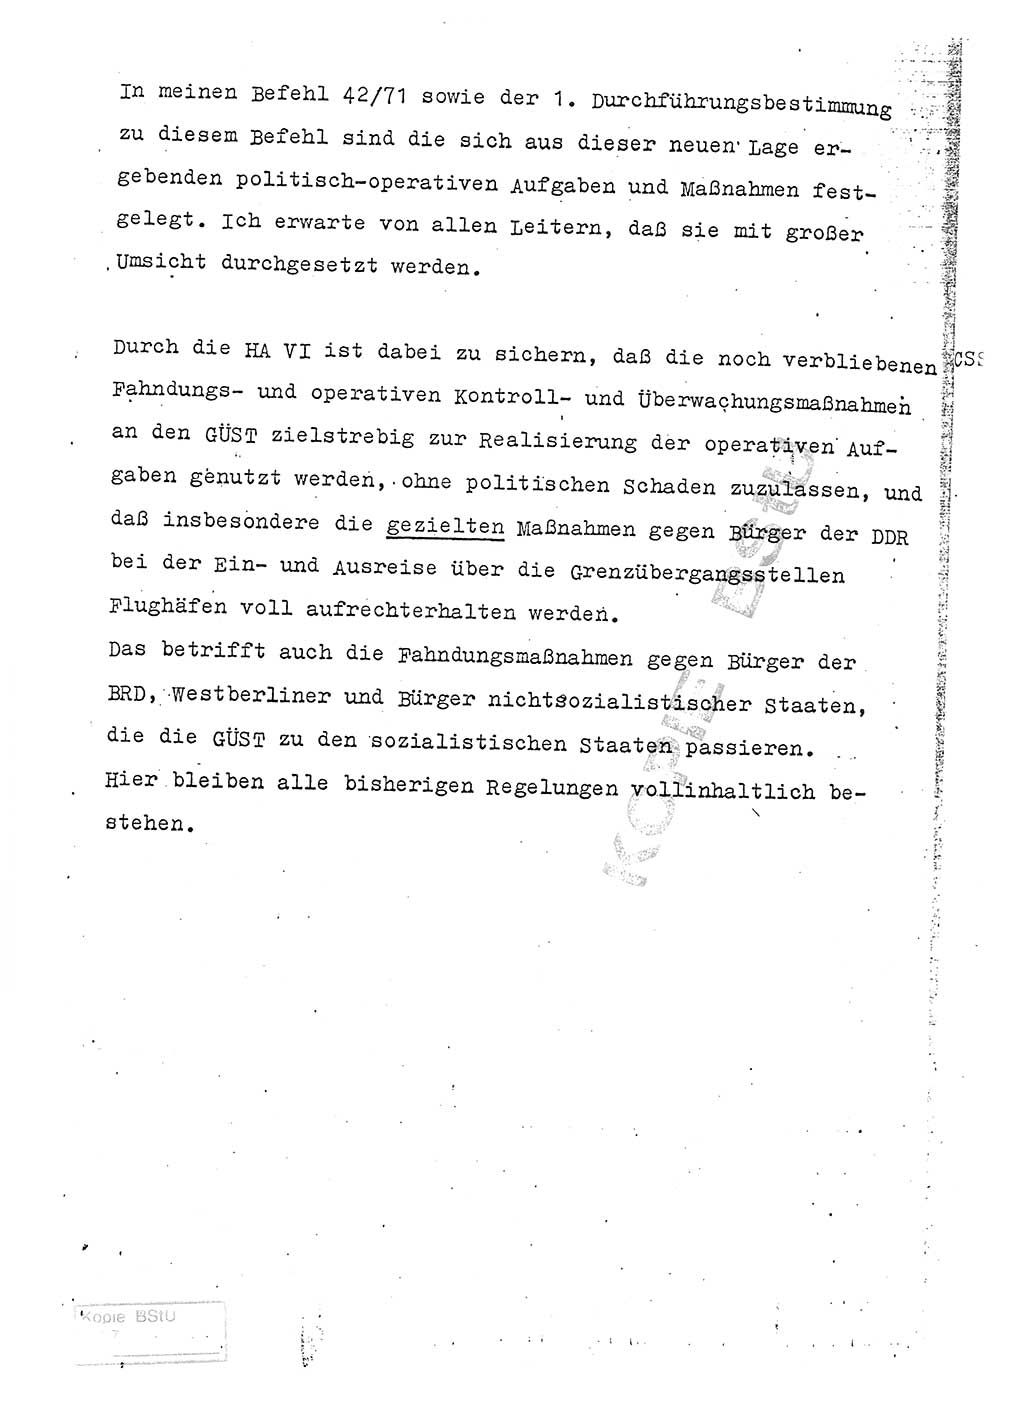 Referat (Entwurf) des Genossen Minister (Generaloberst Erich Mielke) auf der Dienstkonferenz 1972, Ministerium für Staatssicherheit (MfS) [Deutsche Demokratische Republik (DDR)], Der Minister, Geheime Verschlußsache (GVS) 008-150/72, Berlin 25.2.1972, Seite 223 (Ref. Entw. DK MfS DDR Min. GVS 008-150/72 1972, S. 223)